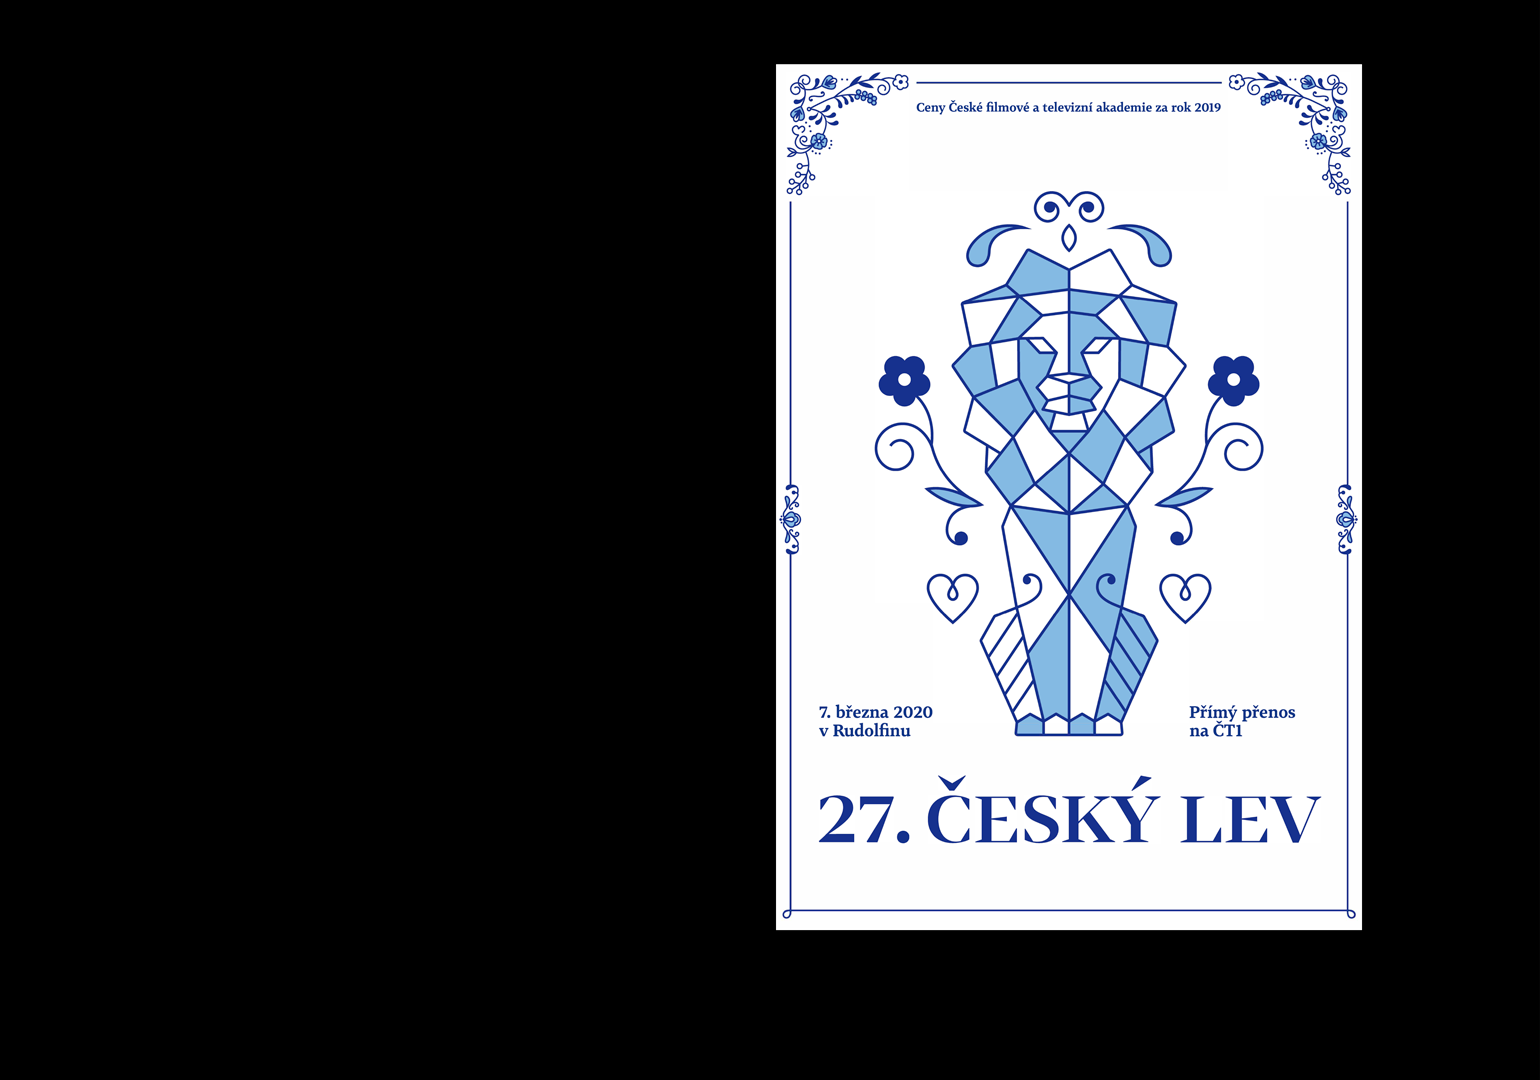 Galavečer Českého lva v modrobílém stylu proběhne 7. března 2020